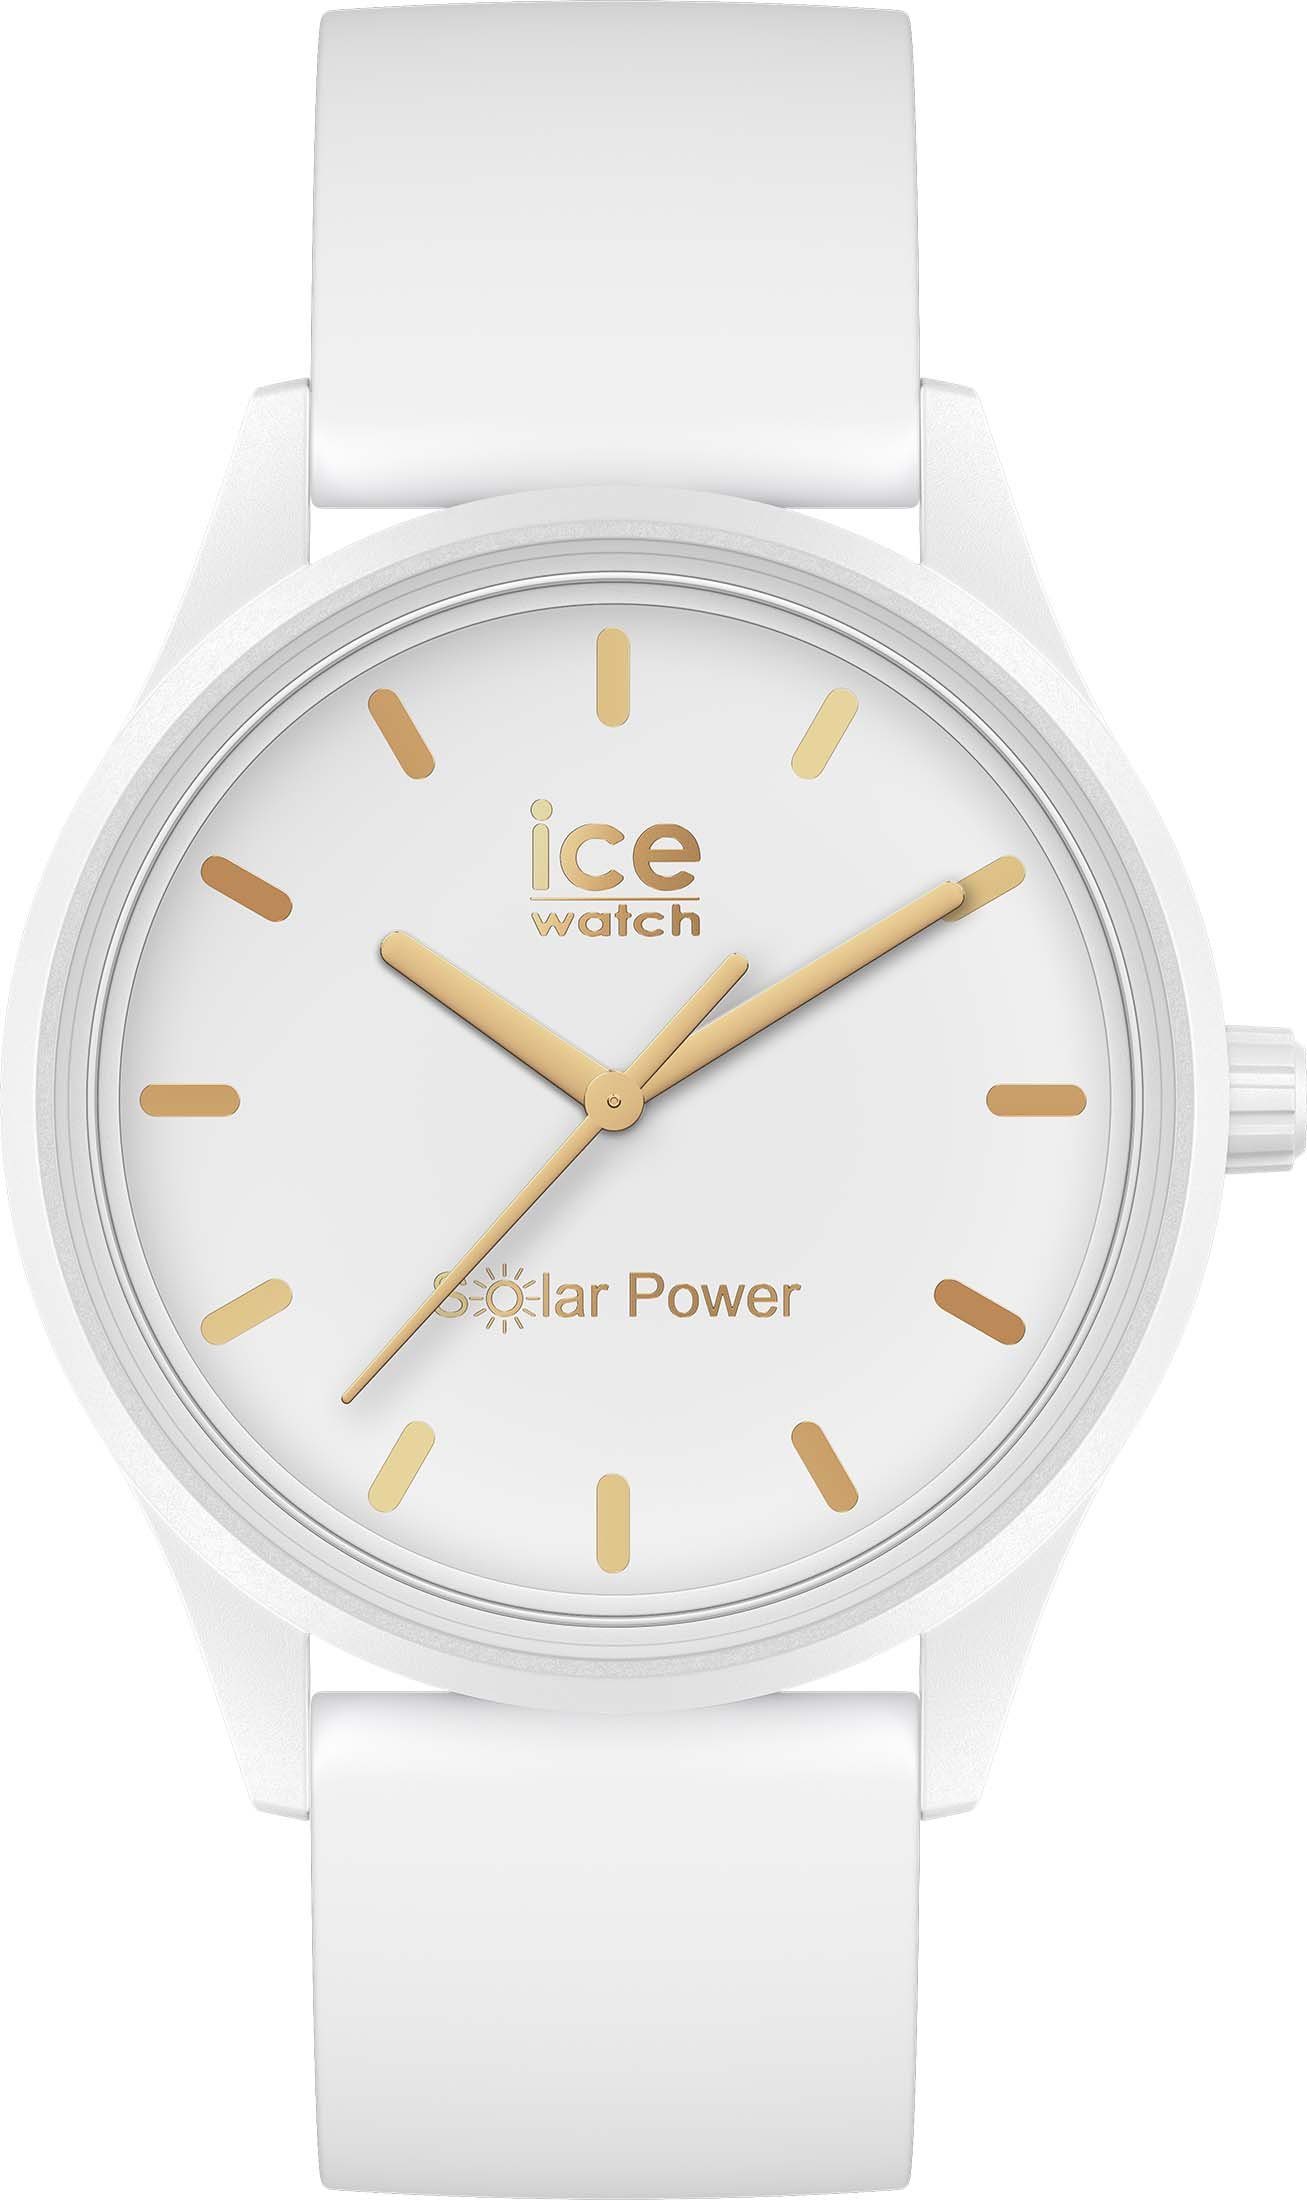 ice-watch ICE power-White Solar weiß gold Solaruhr 020301 M,